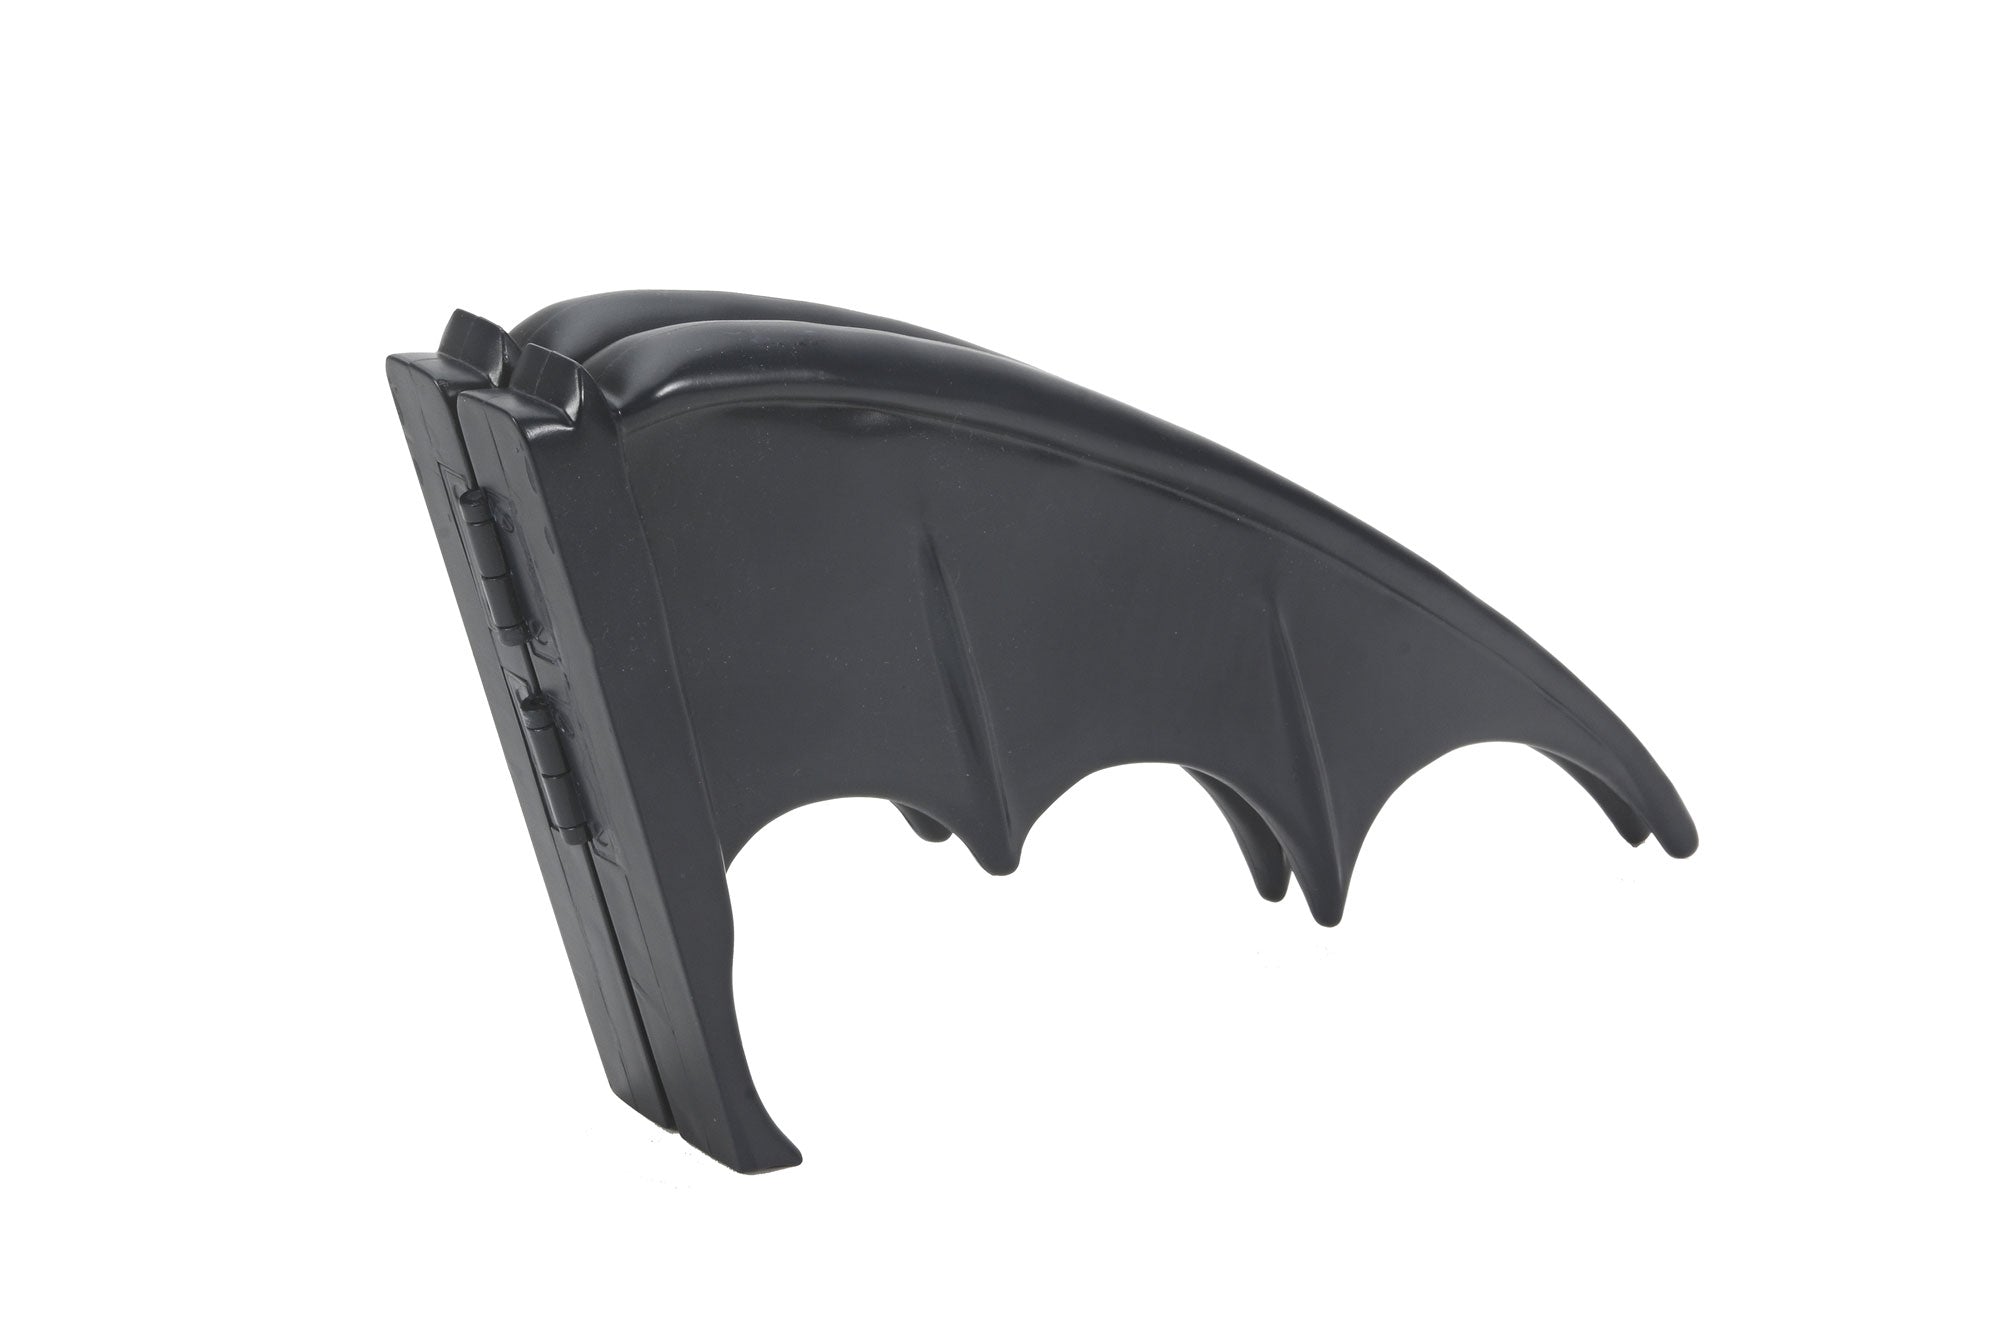 Batman 1966 TV show Batman's Batarang prop replica folded